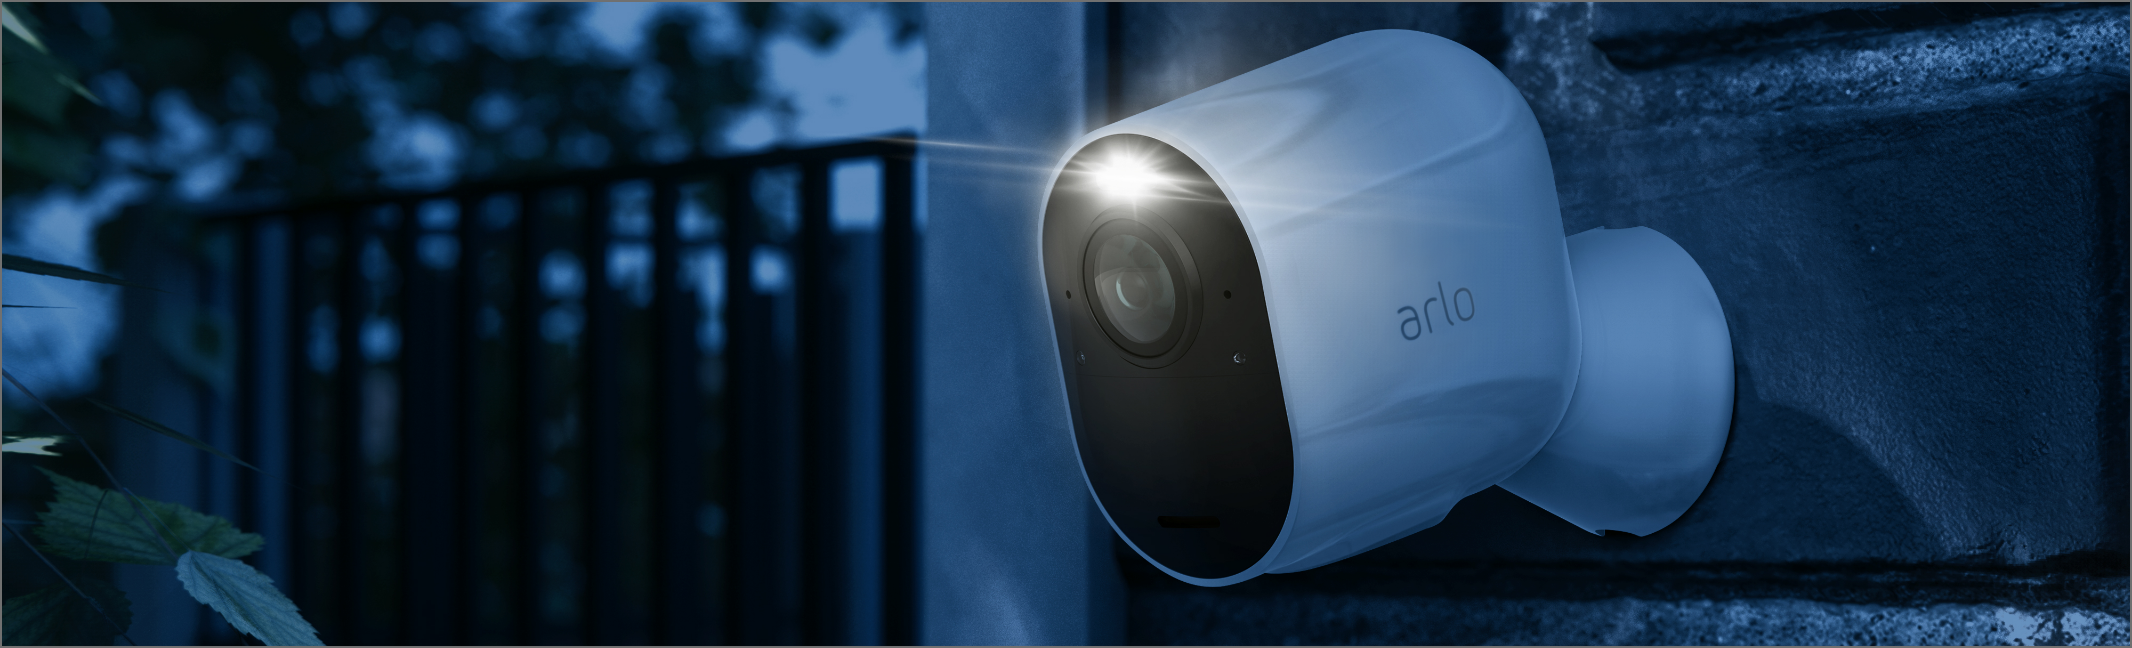 La cámara de vigilancia Arlo Ultra montada en la pared que filma en la oscuridad con su foco incorporado.